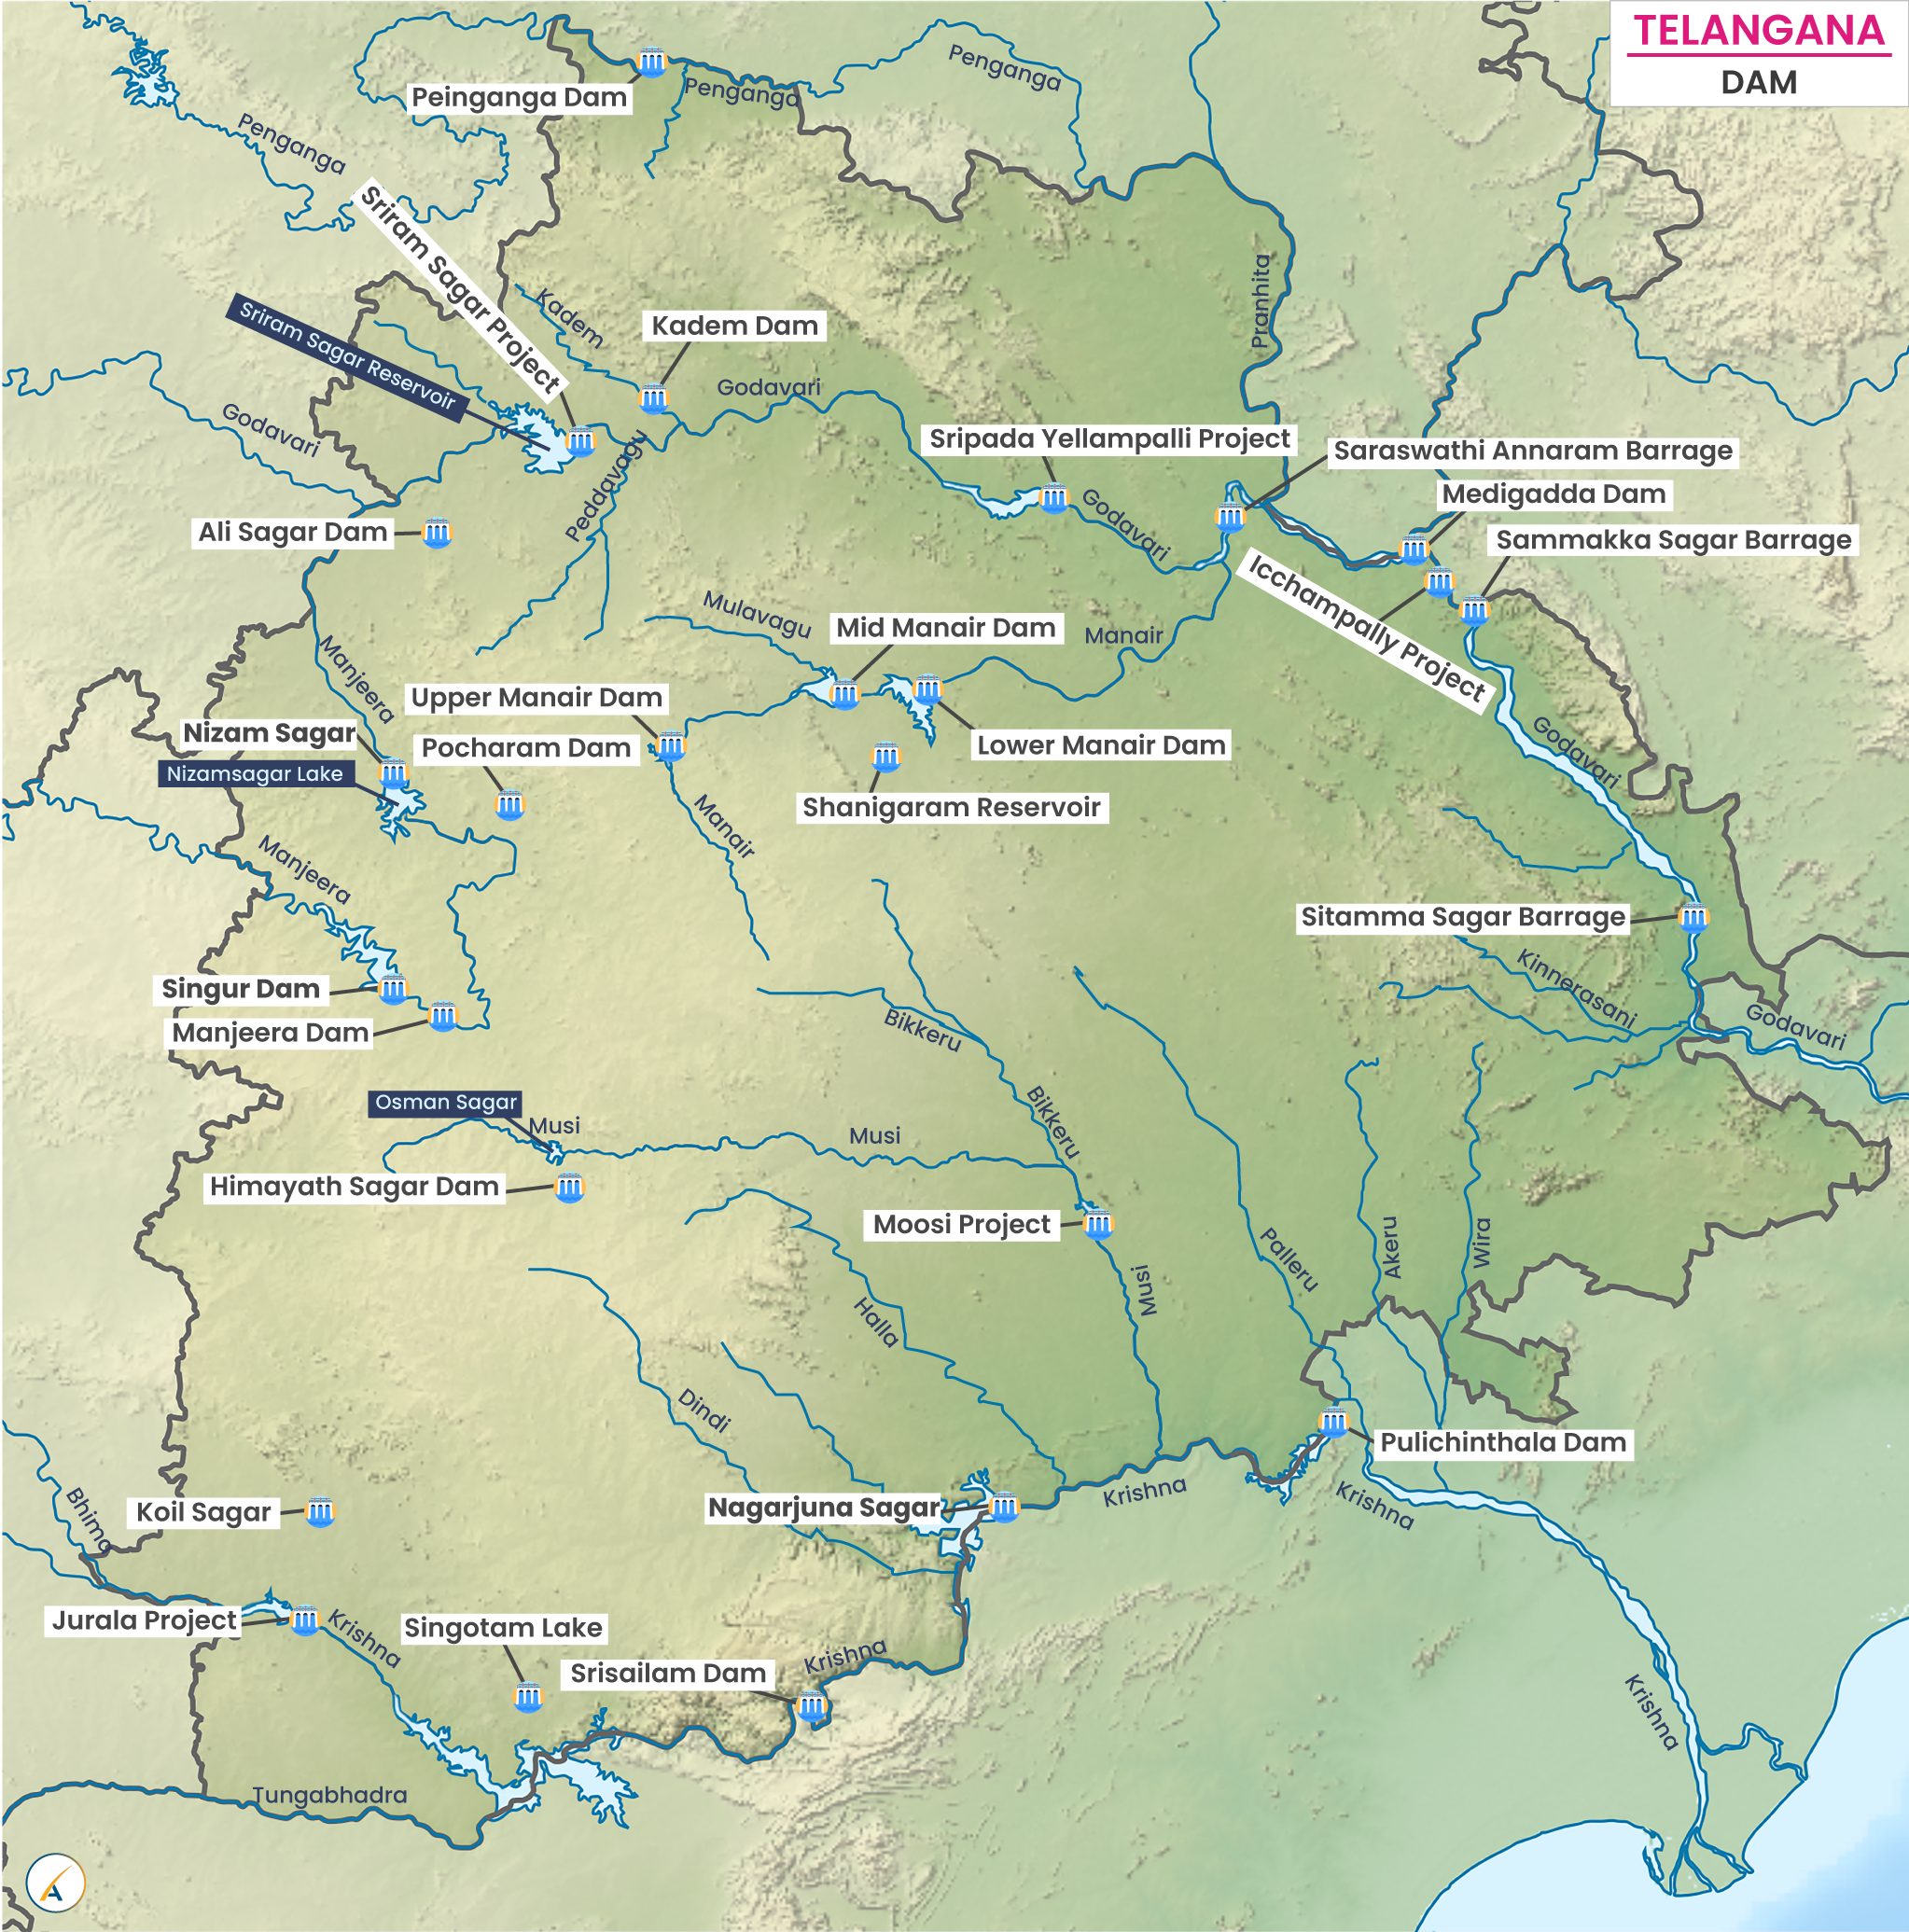 Major Dams in Telangana (Map)